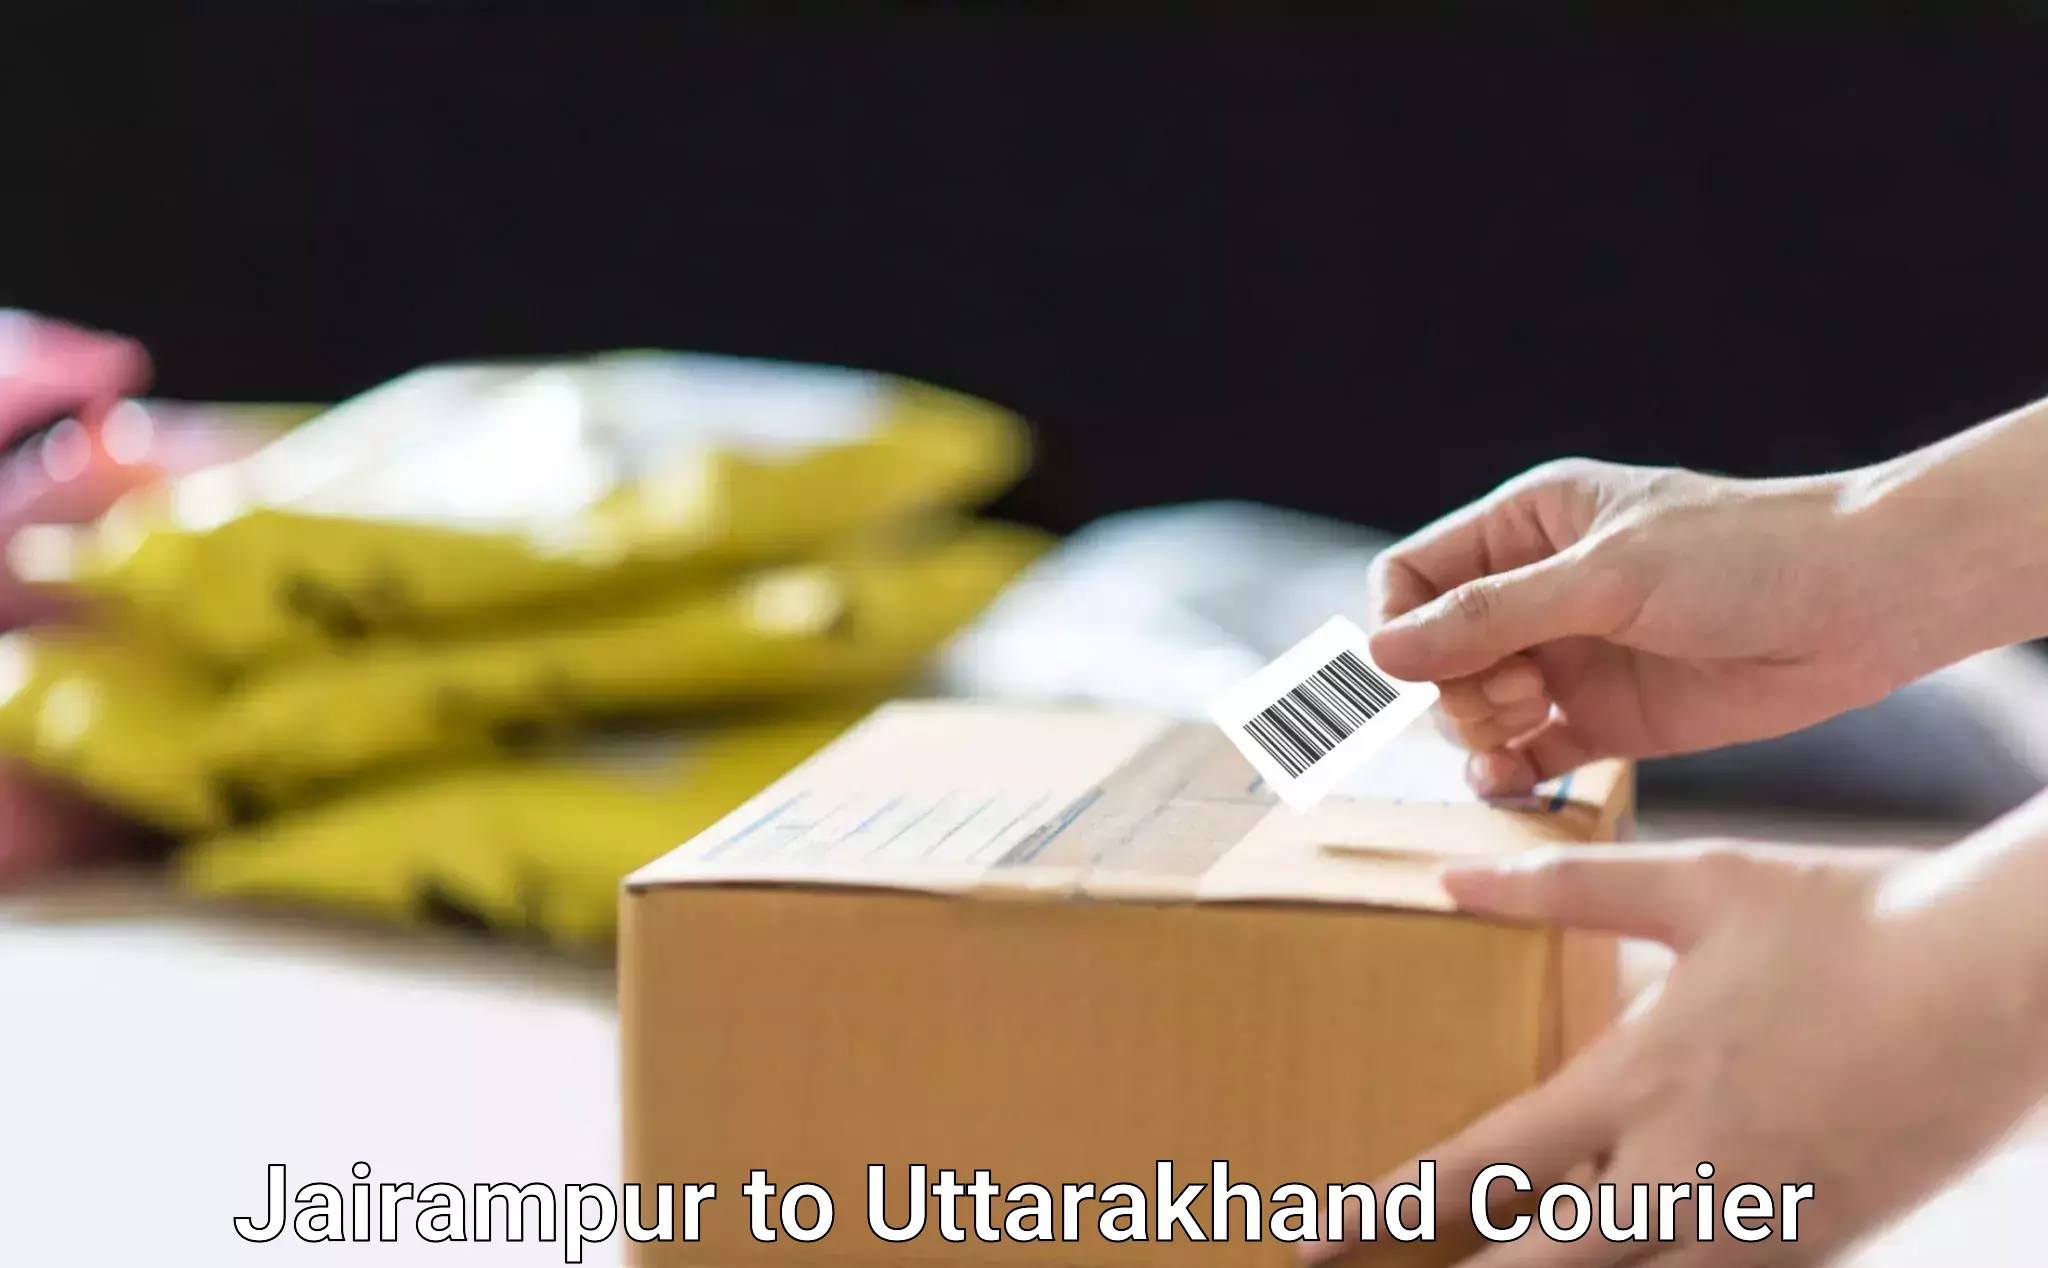 Urgent courier needs Jairampur to NIT Garhwal